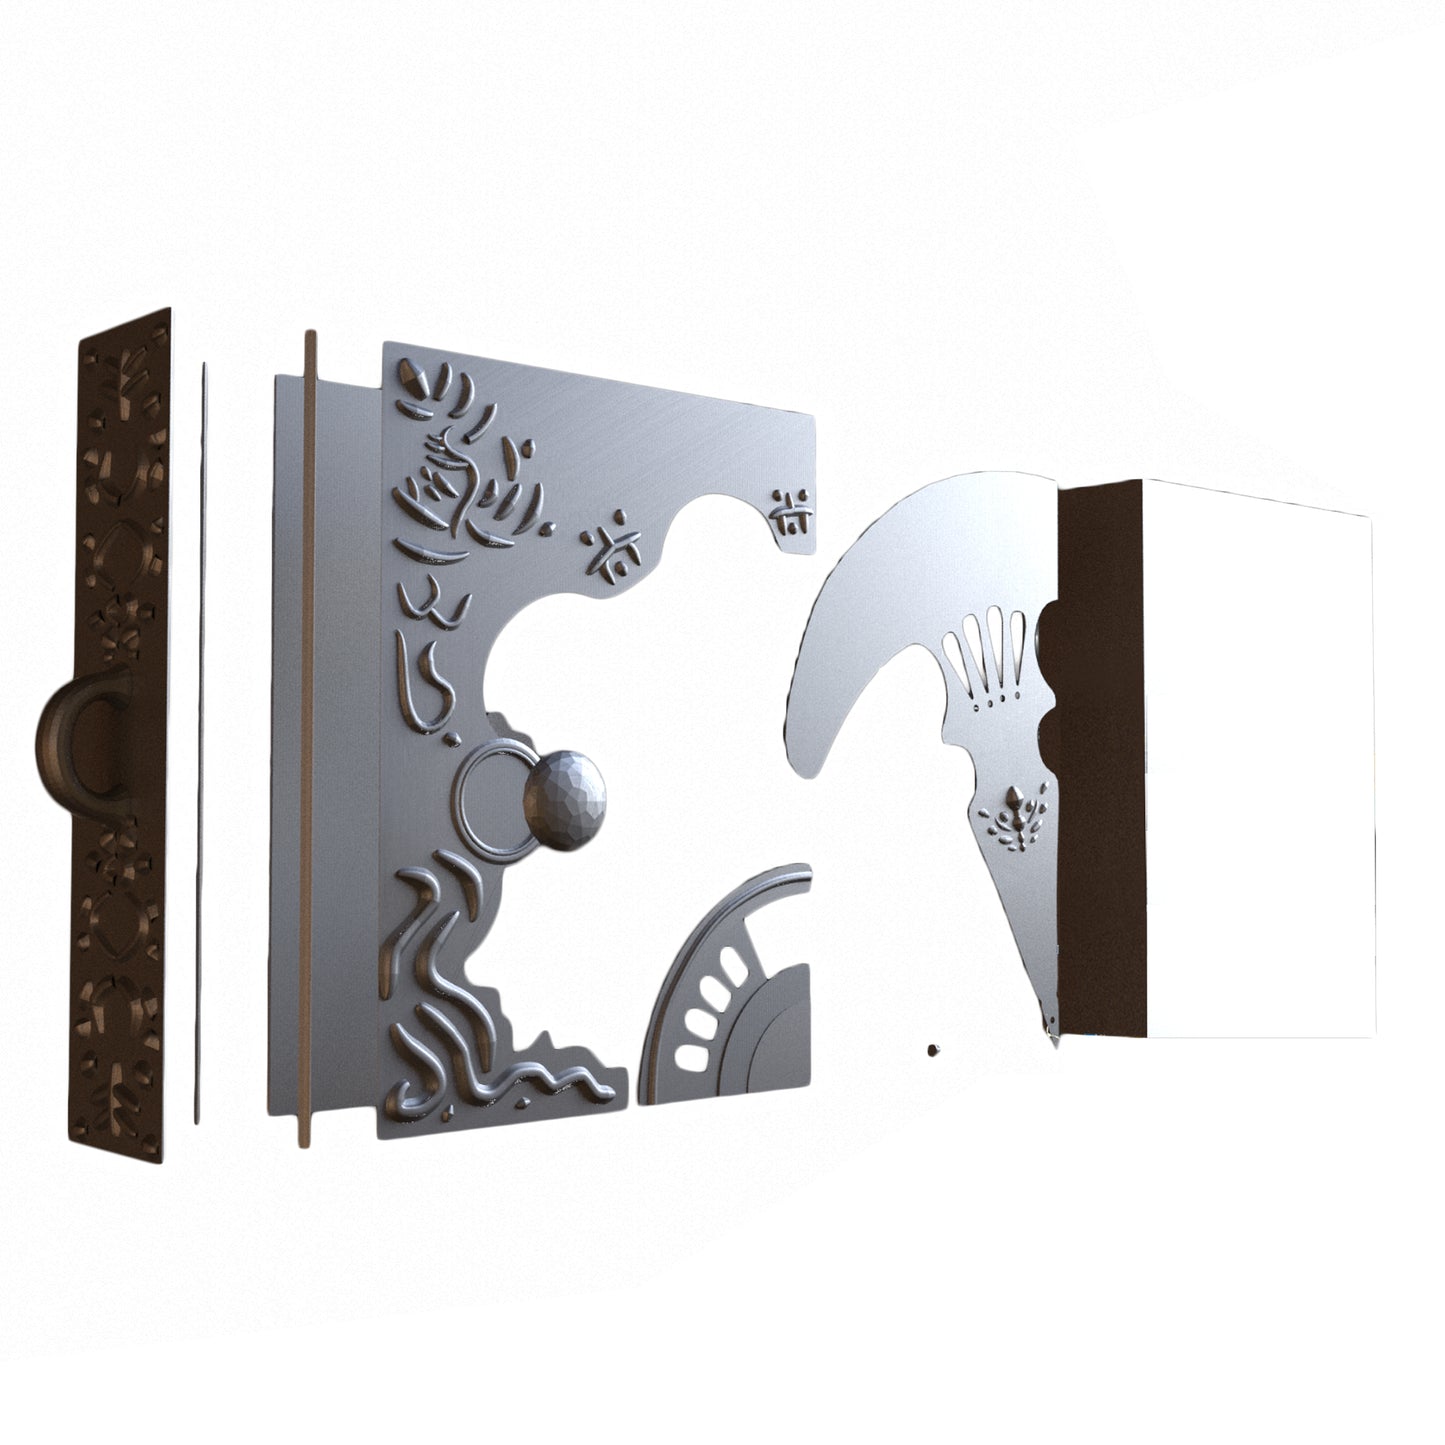 Vanitas Book - Digital 3D Model Files and Physical 3D Printed Kit Options - Vanitas No Carte Cosplay